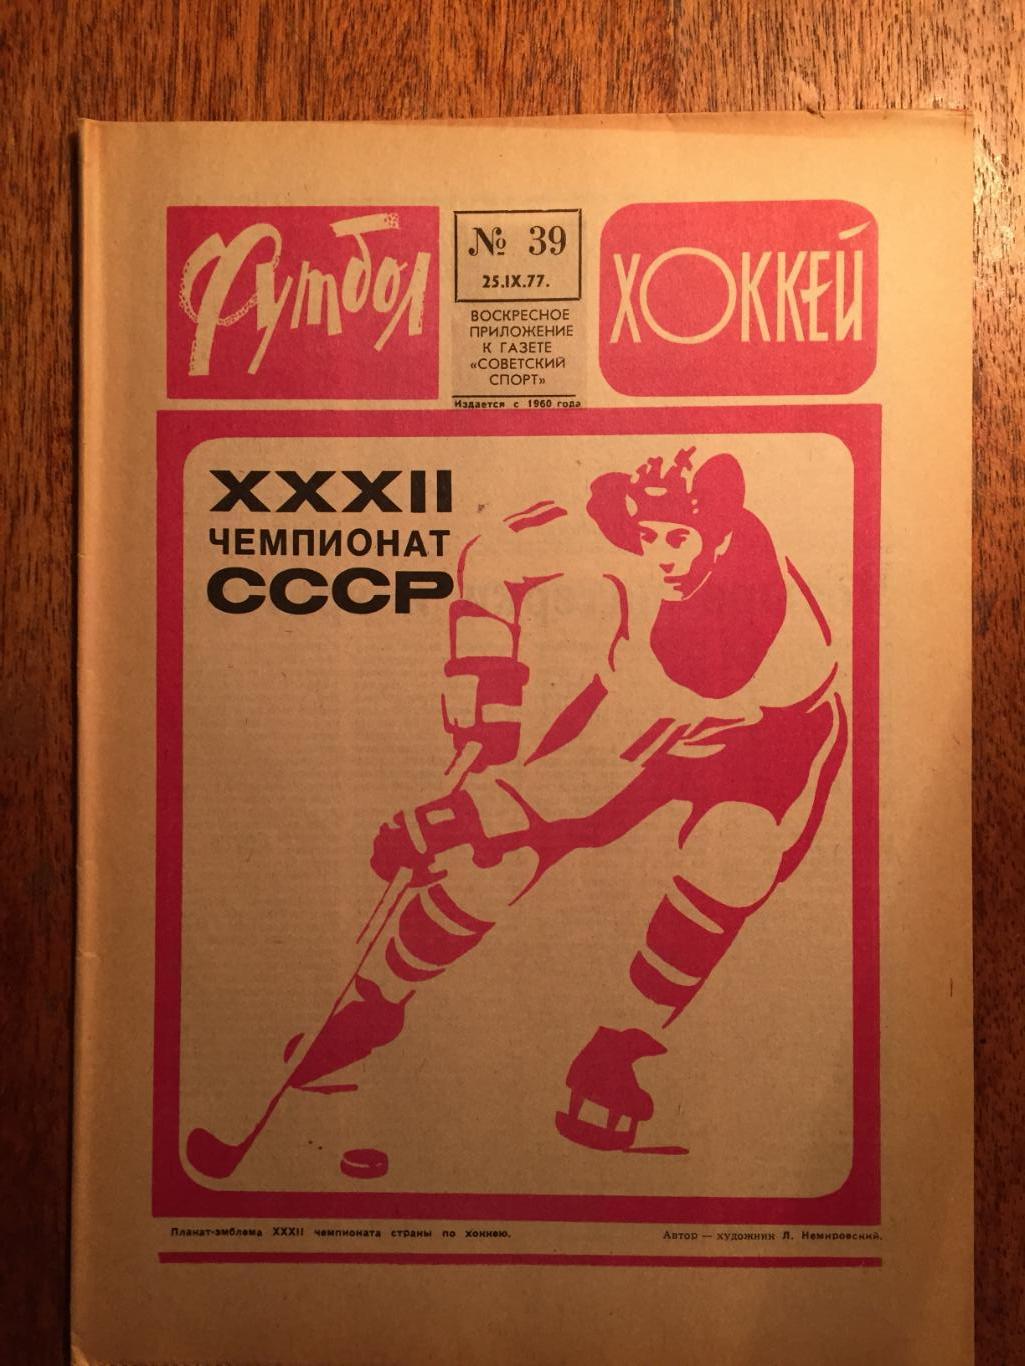 Футбол-Хоккей №39 1977